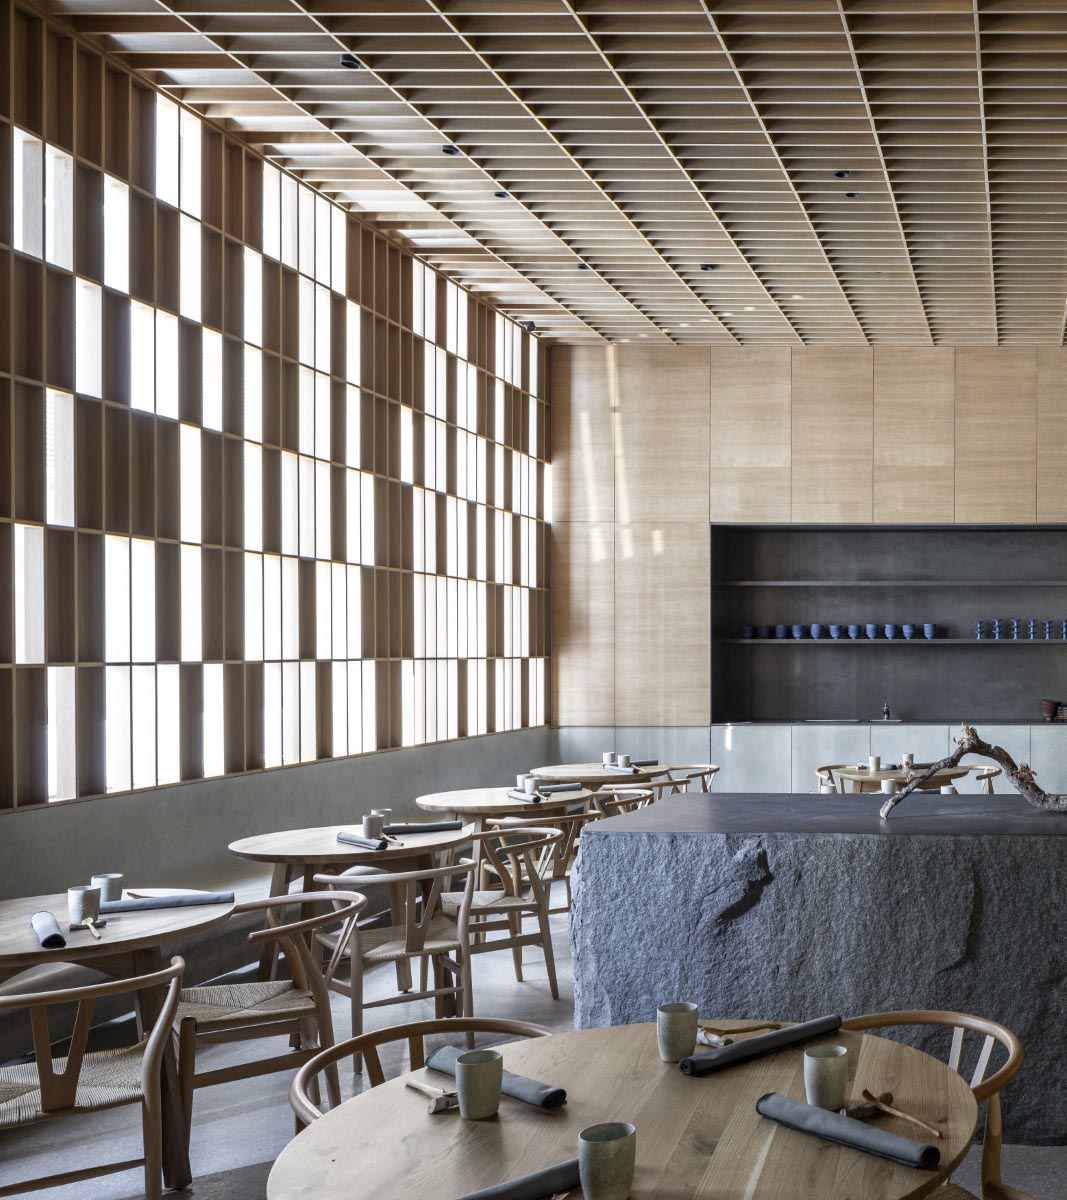 餐厅设计,国外餐厅设计,餐厅设计案例,Pitsou Kedem Architects,以色列,HIBA私享餐厅,HIBA Restaurant,Avital Shenhav-Shani